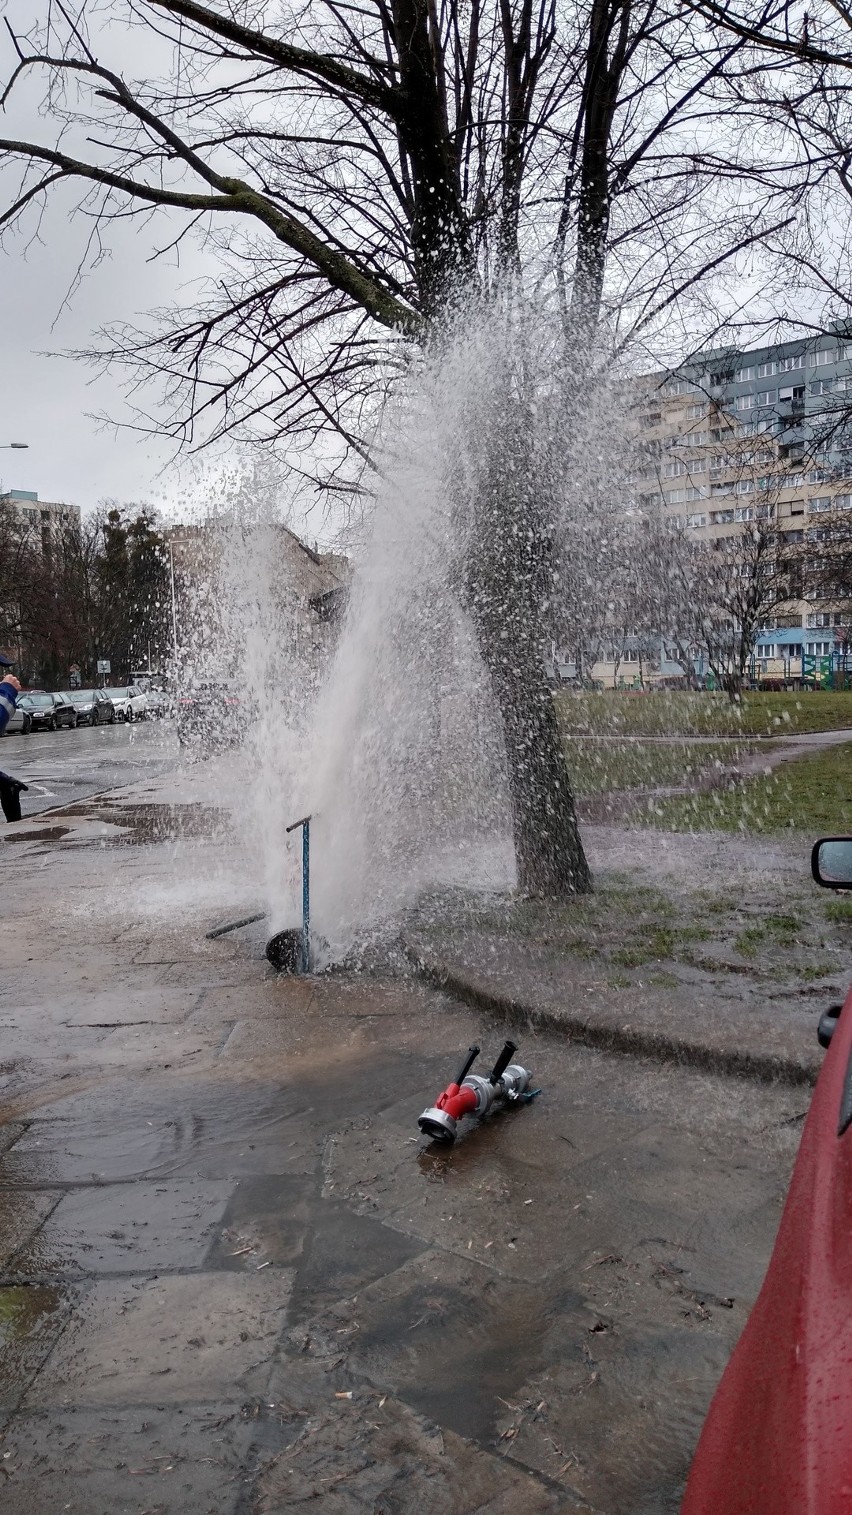 Awaria wodociągu we Wrocławiu. Woda tryskała kilka metrów w górę [ZOBACZ]